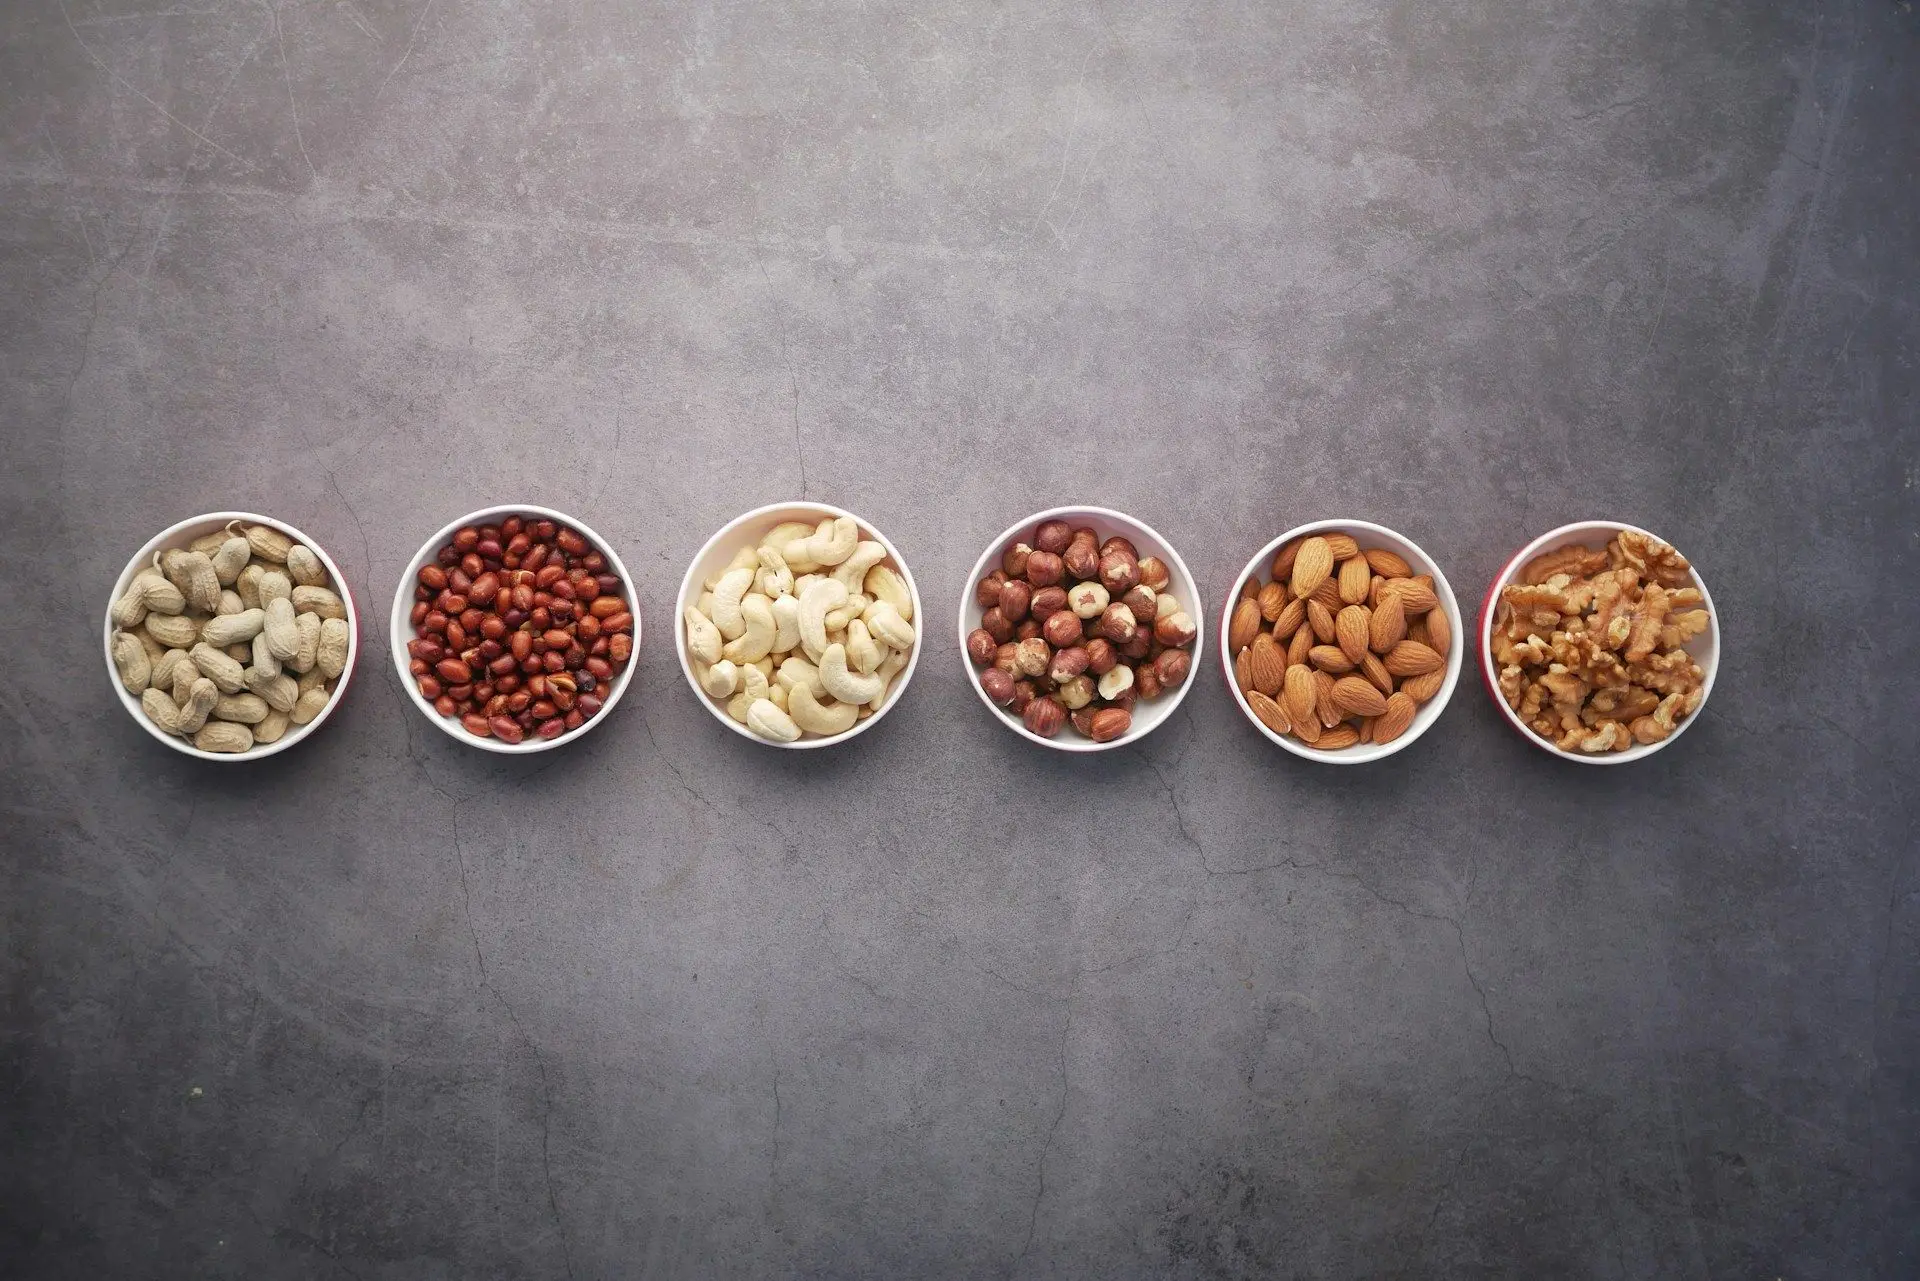 Як впливає споживання горіхів на ваш організм?